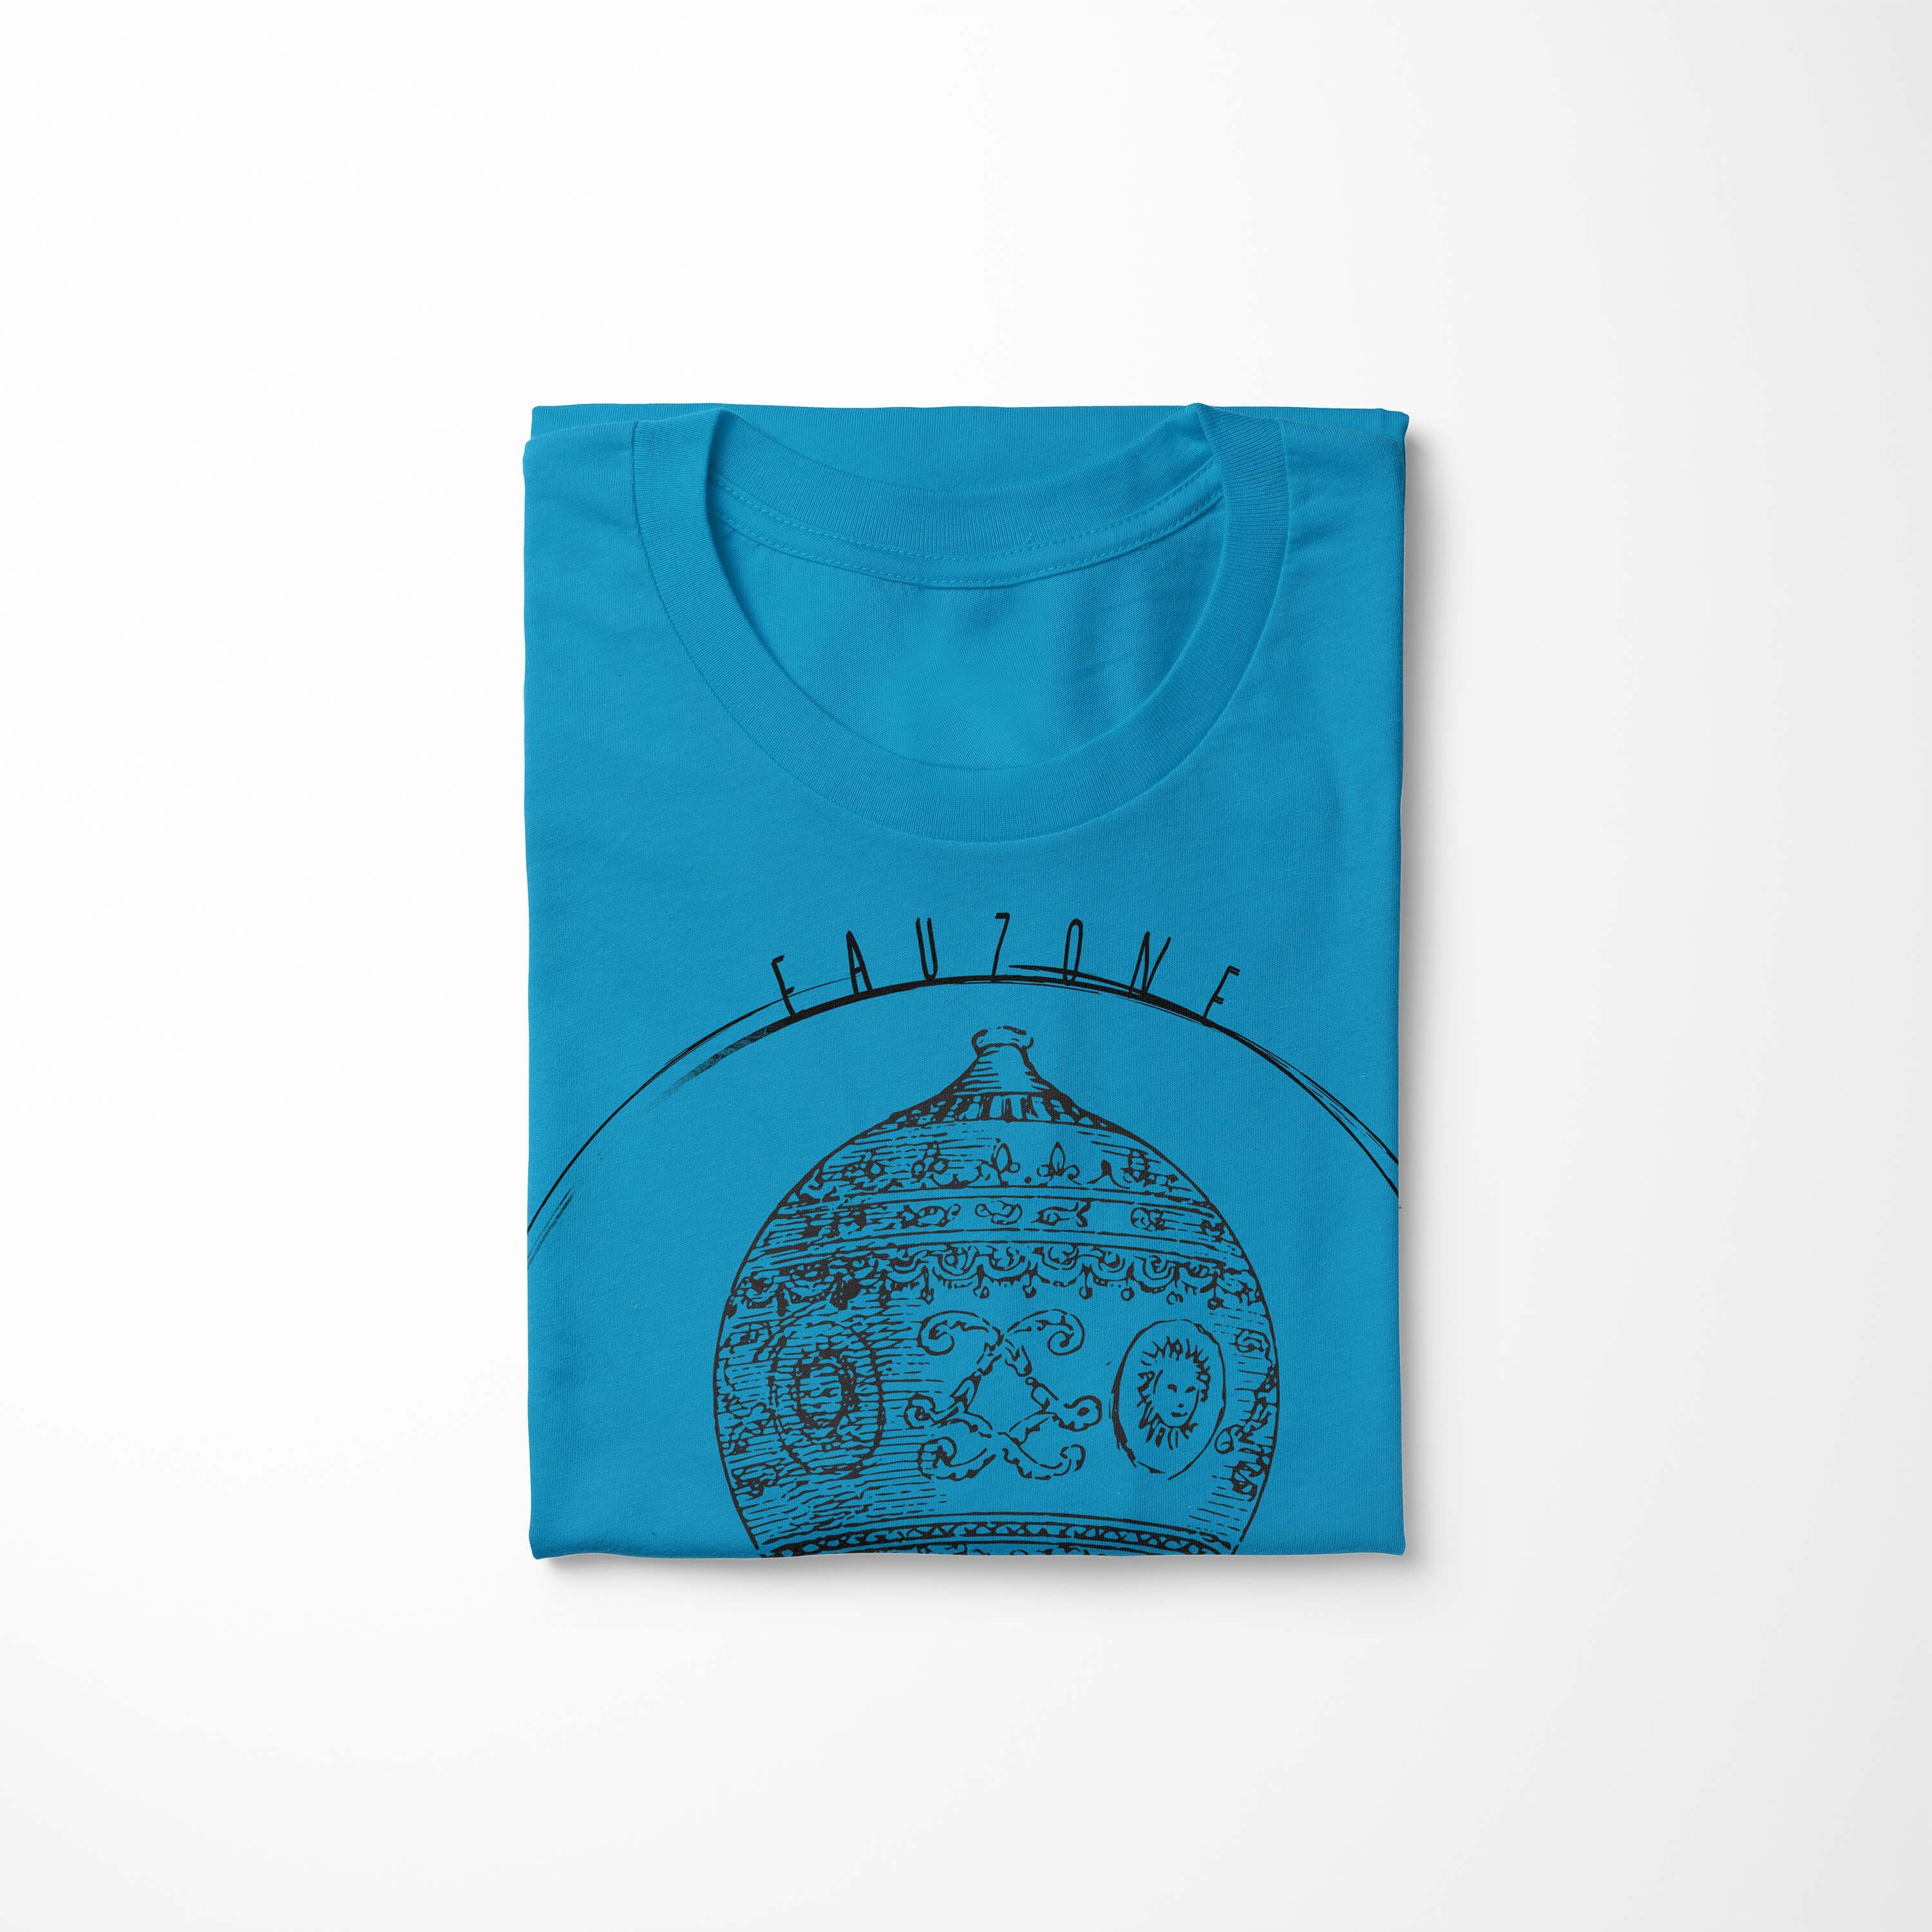 Herren Sinus T-Shirt Atoll Art T-Shirt Heizluftballon Vintage